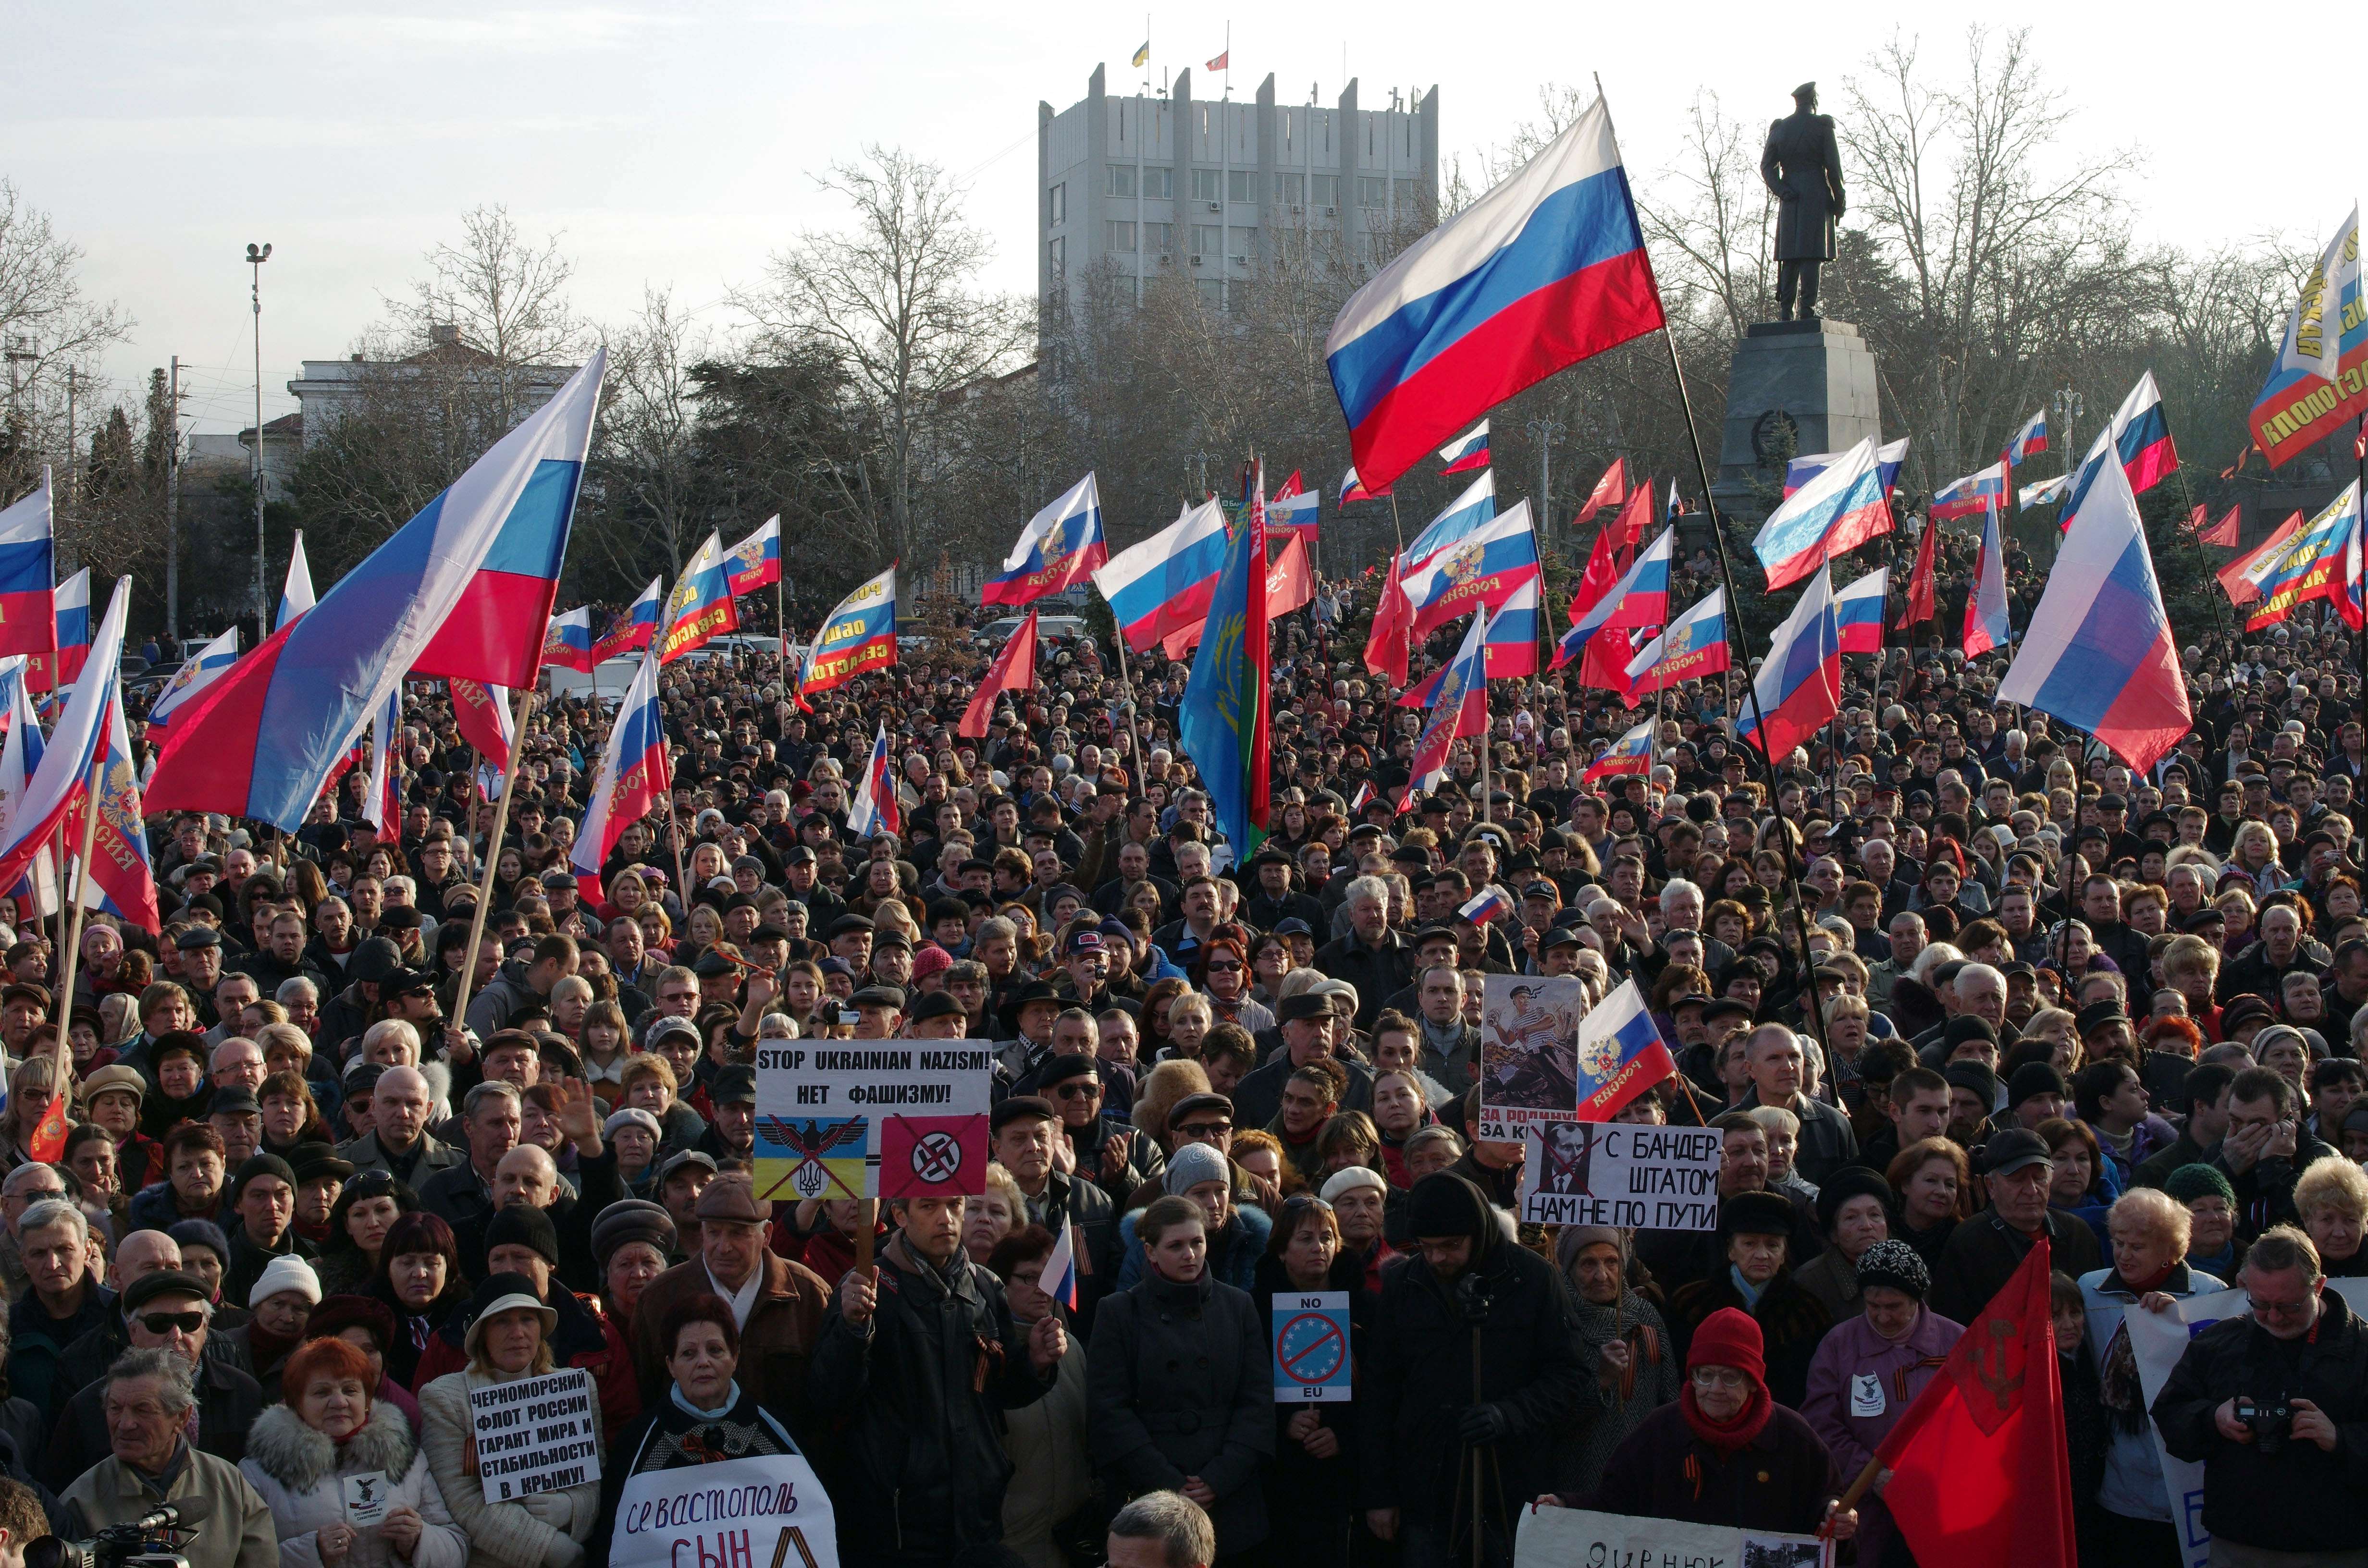 Criza din Crimeea, un RusoMaidan. Rusia incurajeaza revolta celor nemultumiti de caderea lui Ianukovici - Imaginea 1